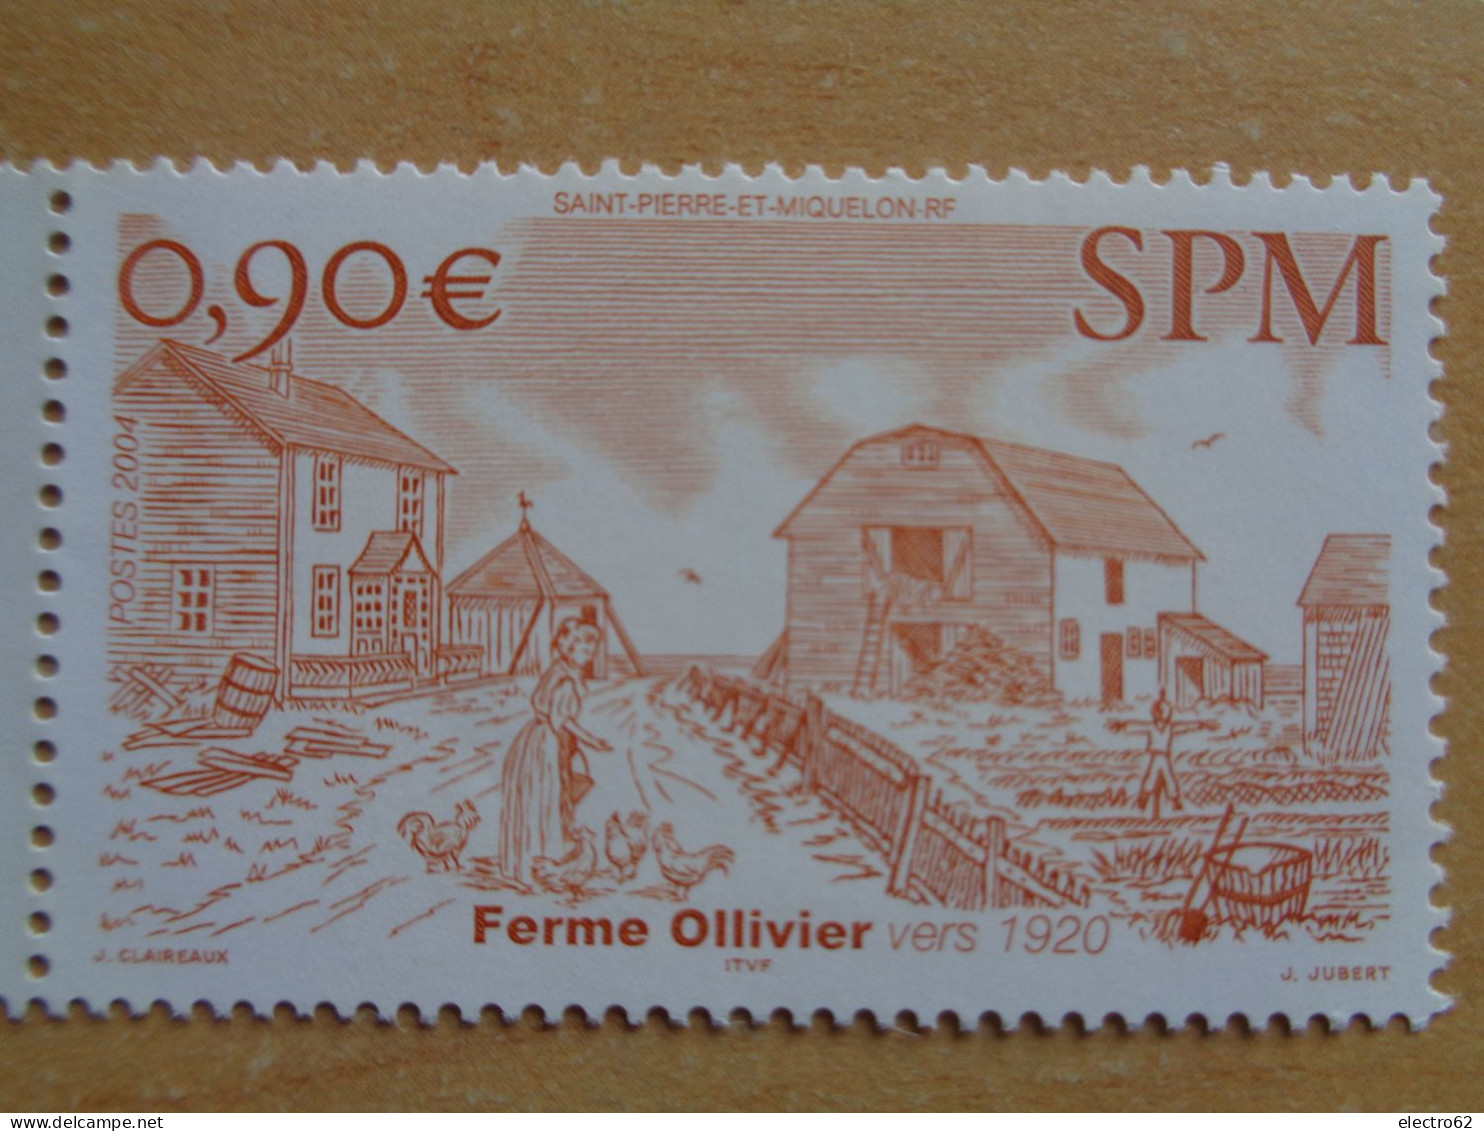 SPM Saint Pierre Et Miquelon La Ferme D'Ollivier Vers 1920 - Landbouw